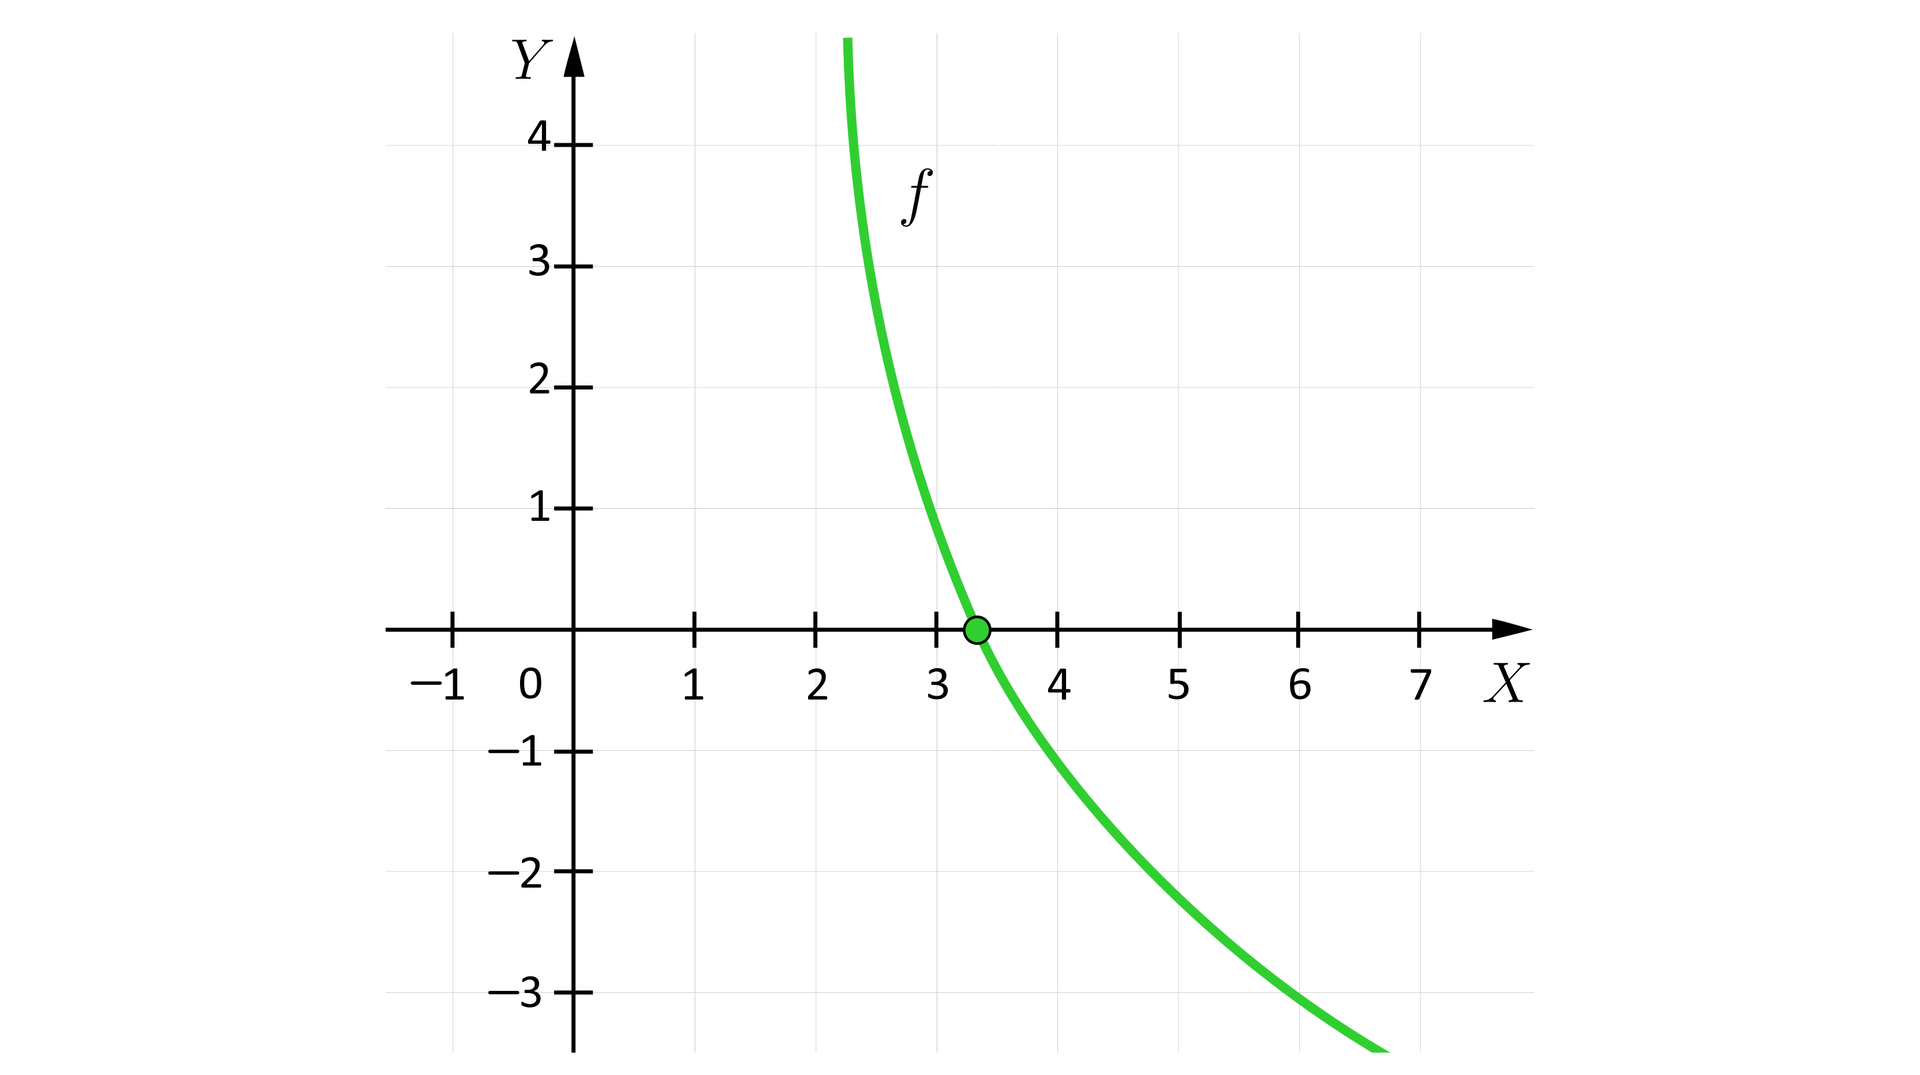 Ilustracja przedstawia układ współrzędnych z poziomą osią X od minus jeden do siedmiu oraz z pionową osią Y od minus trzech do czterech. Na płaszczyźnie zaznaczono wykres funkcji f. Jest to funkcja logarytmiczna o podstawie 22. Wykres tej funkcji bardziej przypomina kształtem łuk, niż najczęściej przedstawiany lekko spłaszczony wykres funkcji logarytmicznej.